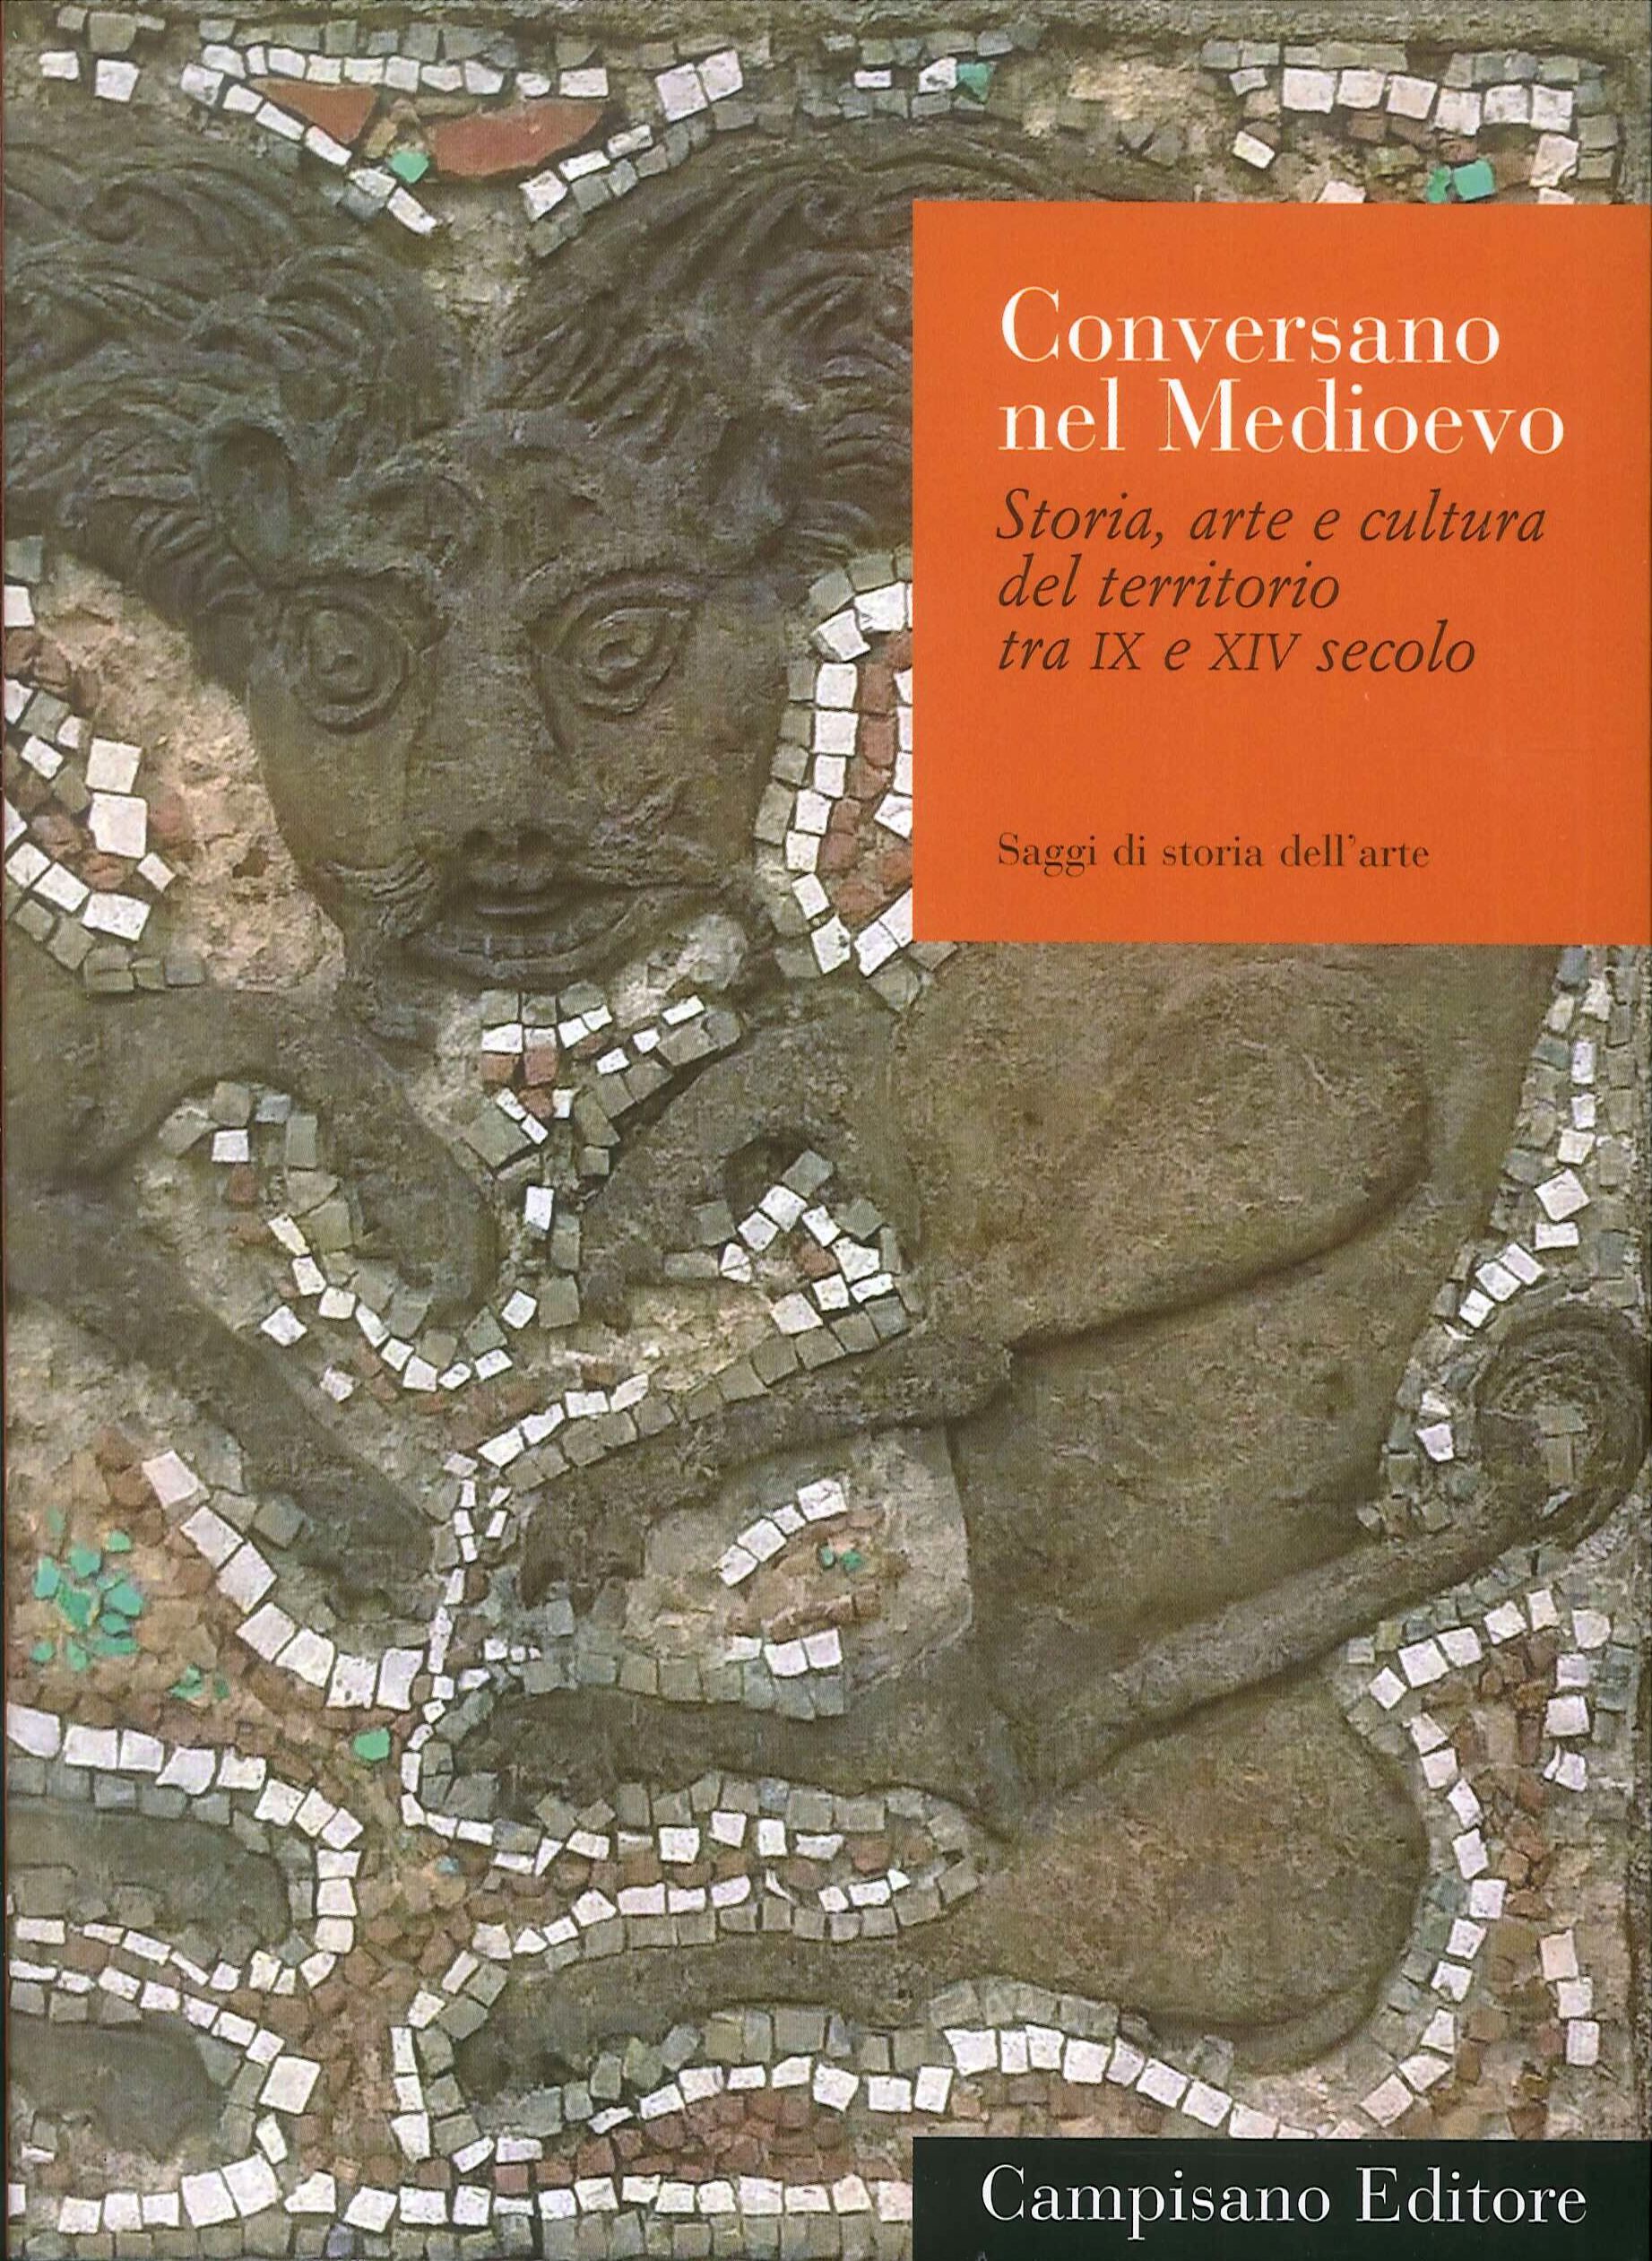 Conversano nel Medioevo. Storia, arte e cultura del territorio tra IX e XIV seco - Picture 1 of 1